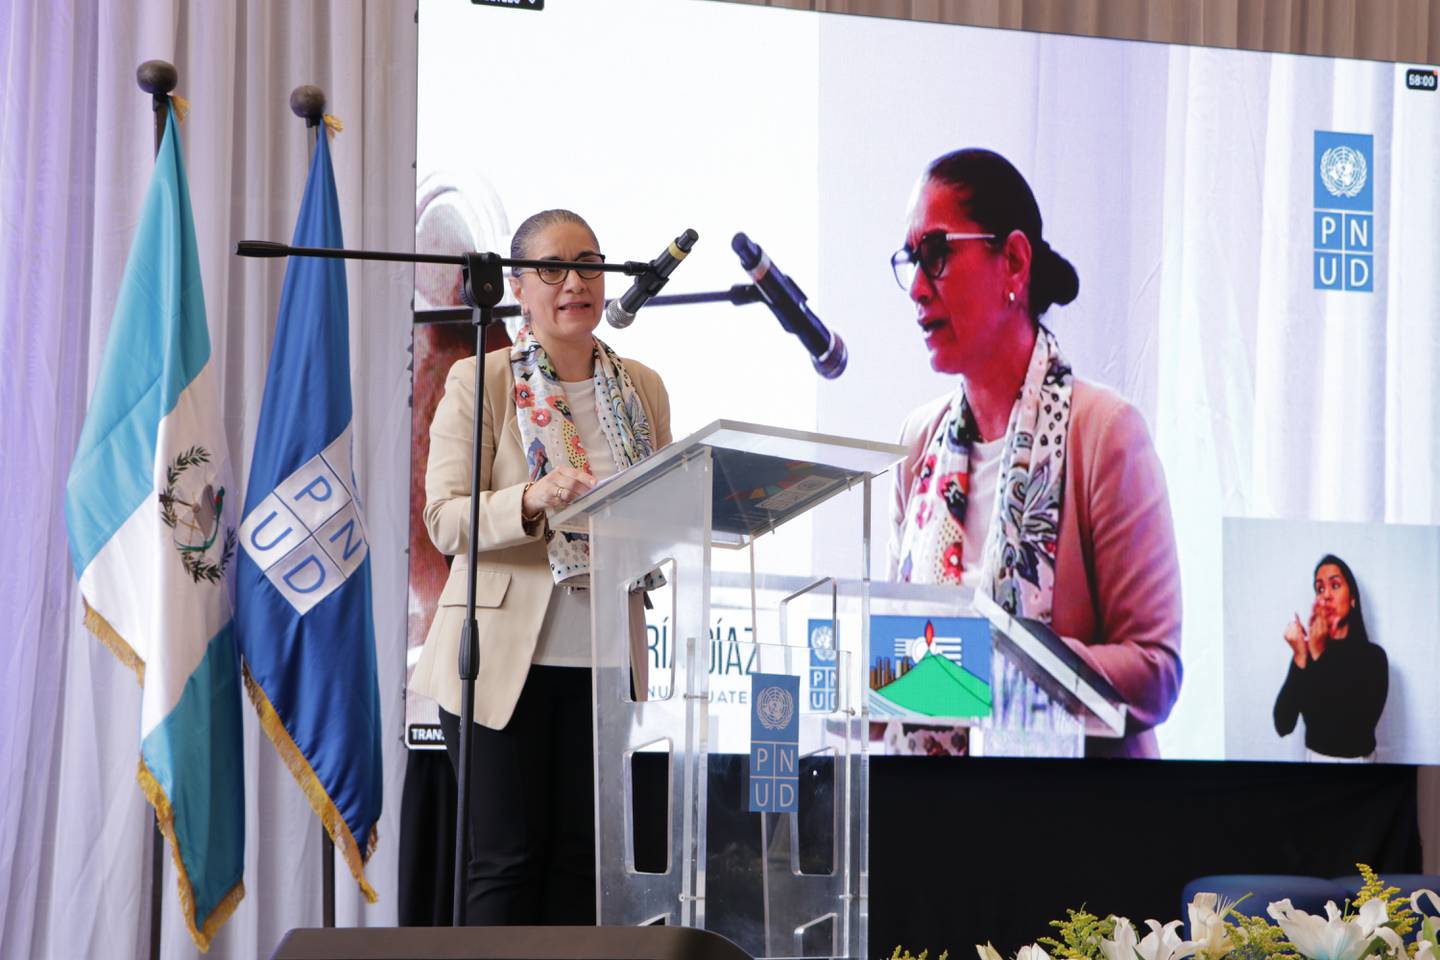 Ana María Díaz, representante residente del PNUD en Guatemala, durante la presentación del documento en Alta Verapaz.dfd